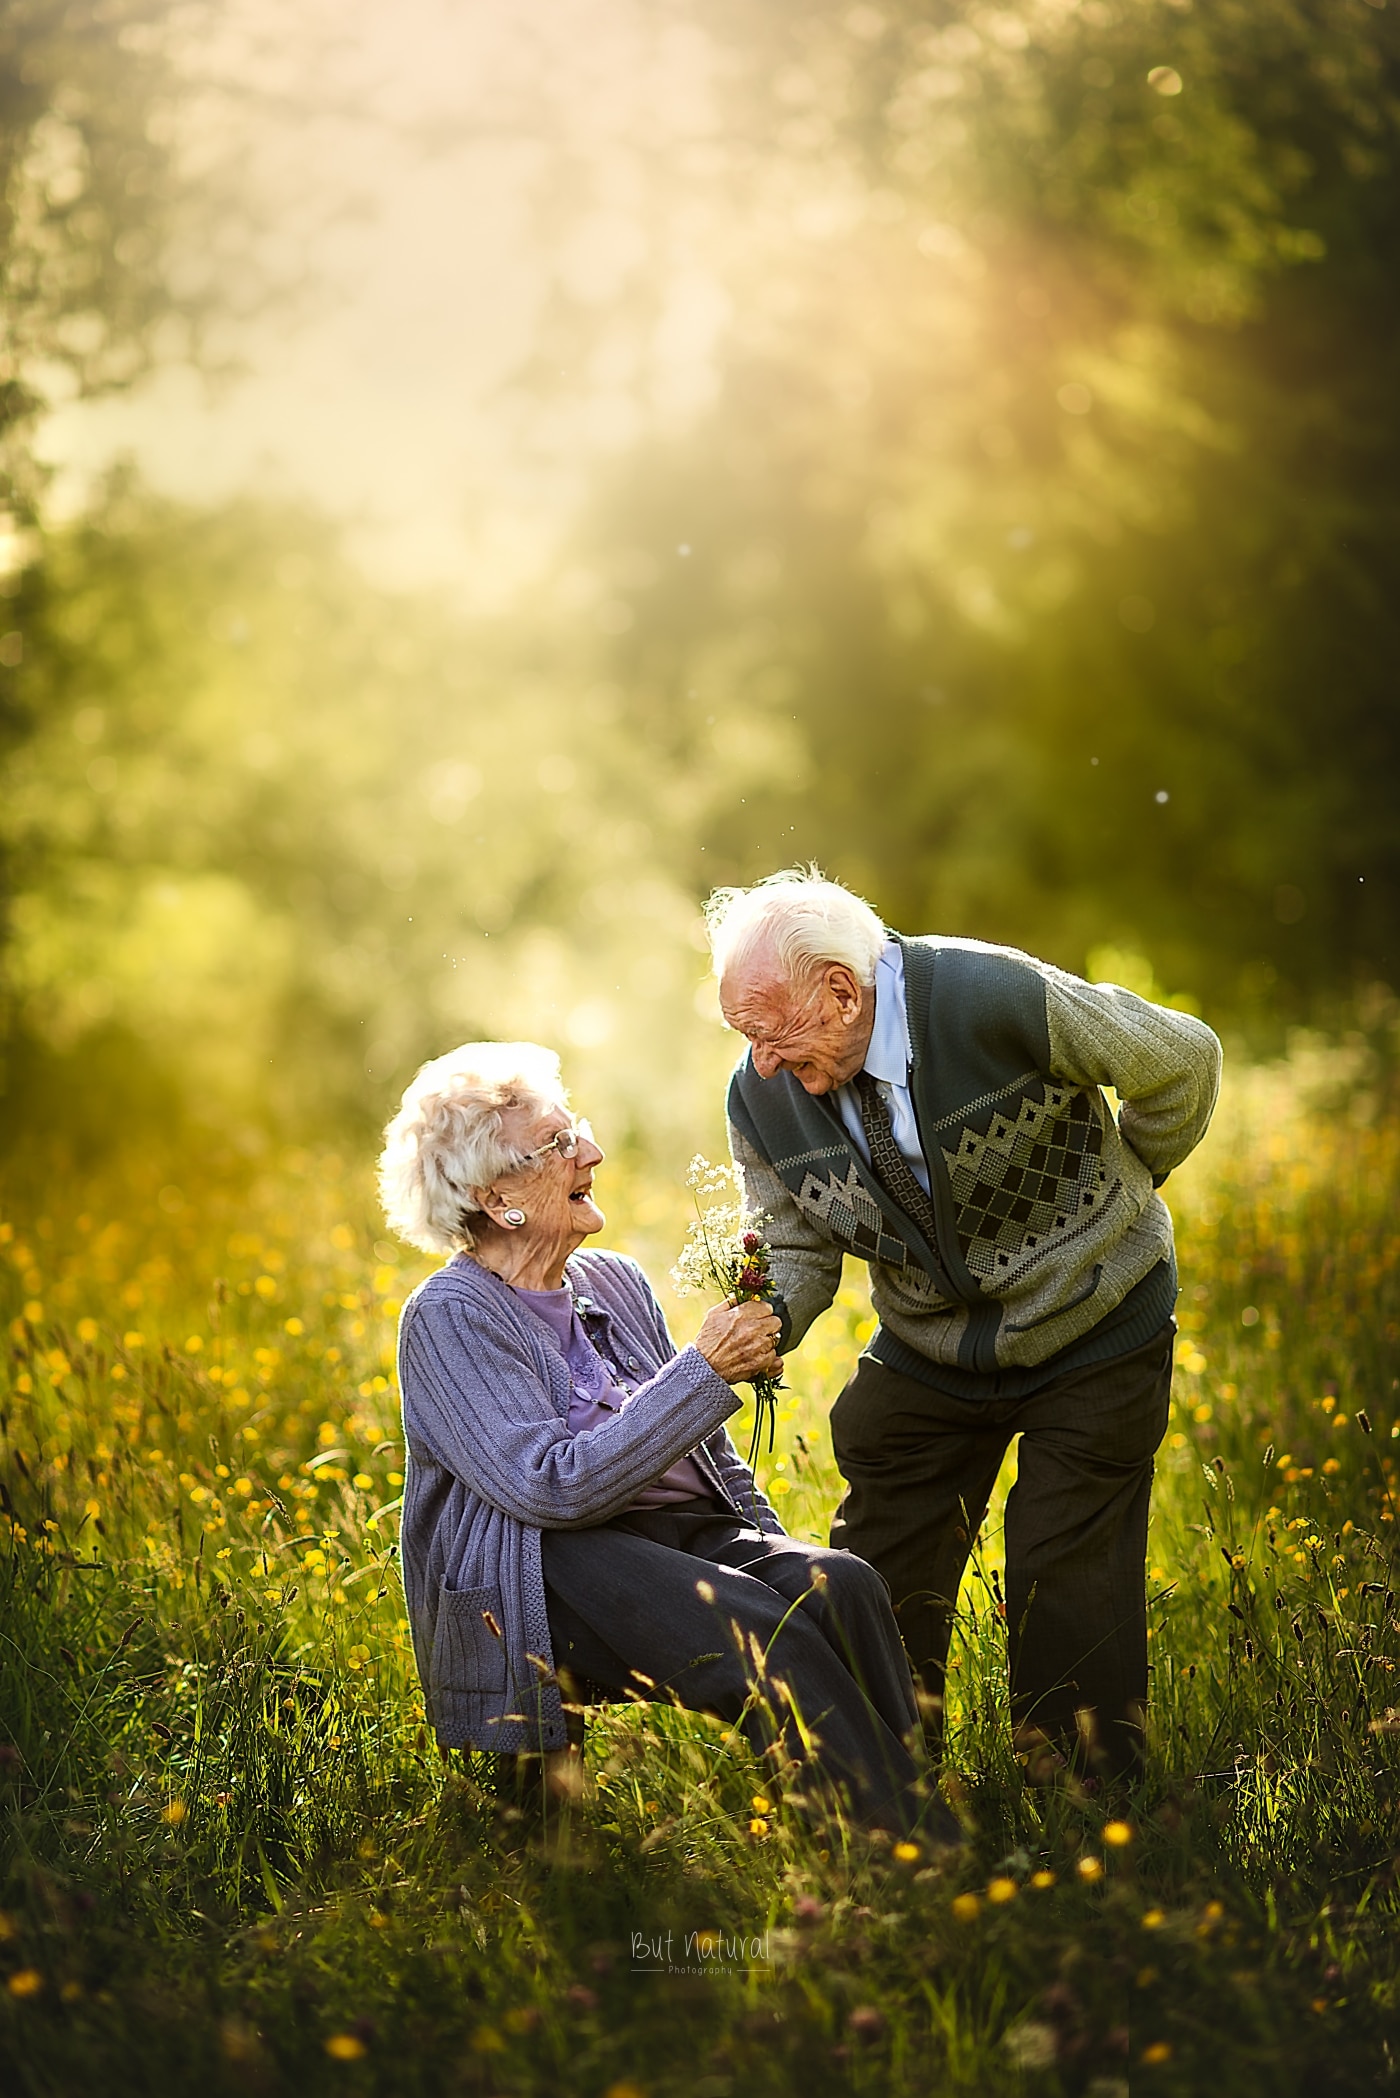 Photos of Elderly Couples